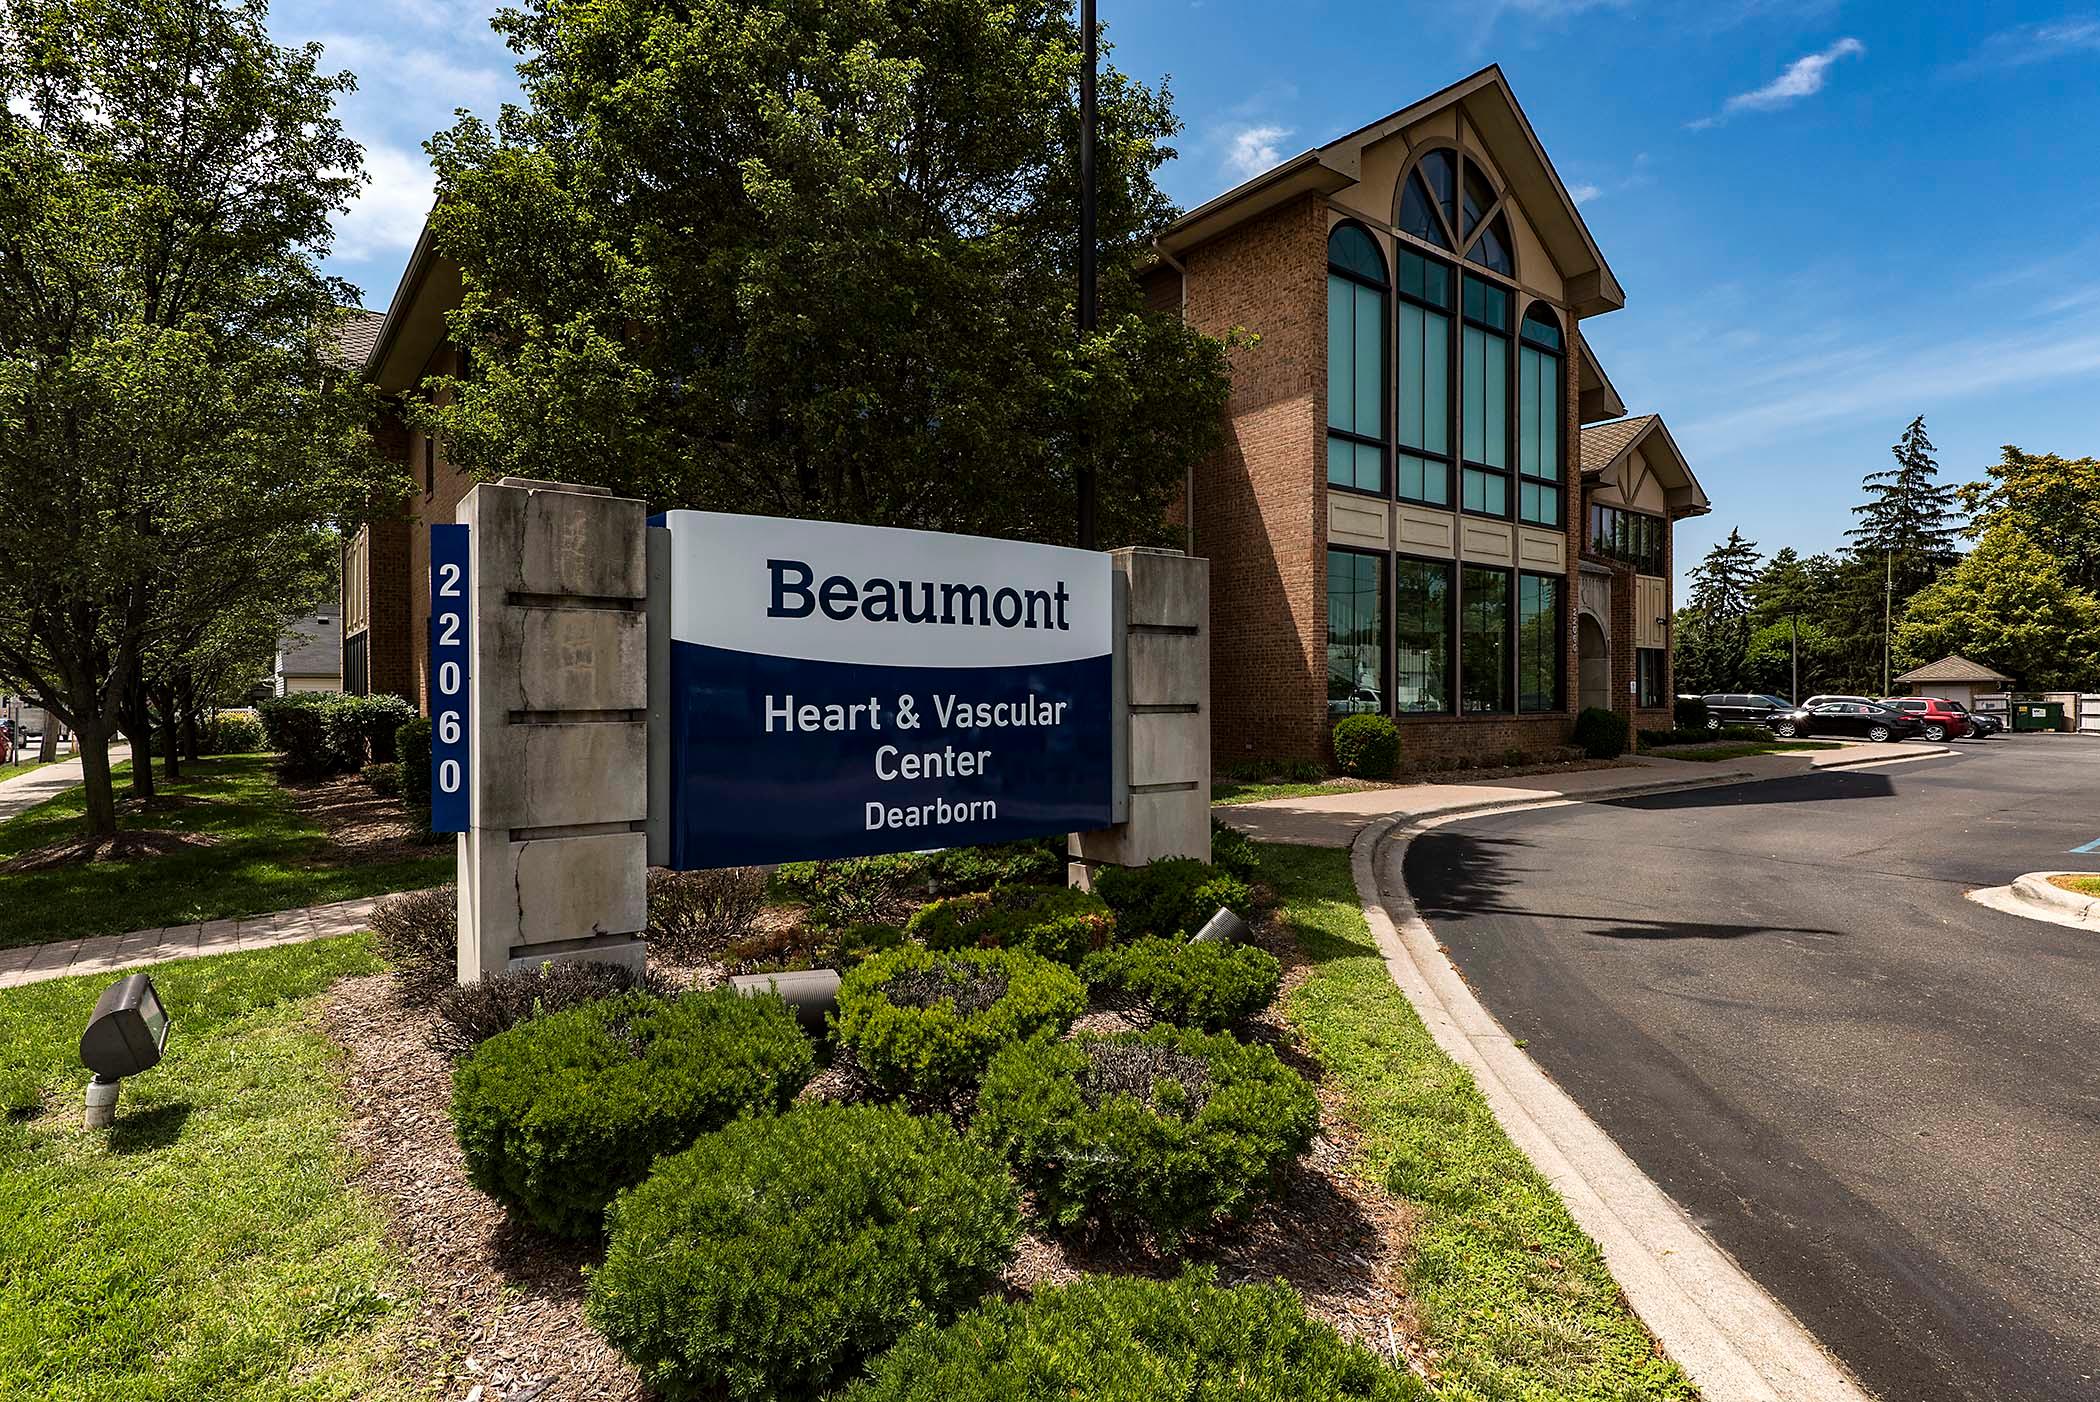 Beaumont Heart & Vascular Center - Dearborn Photo